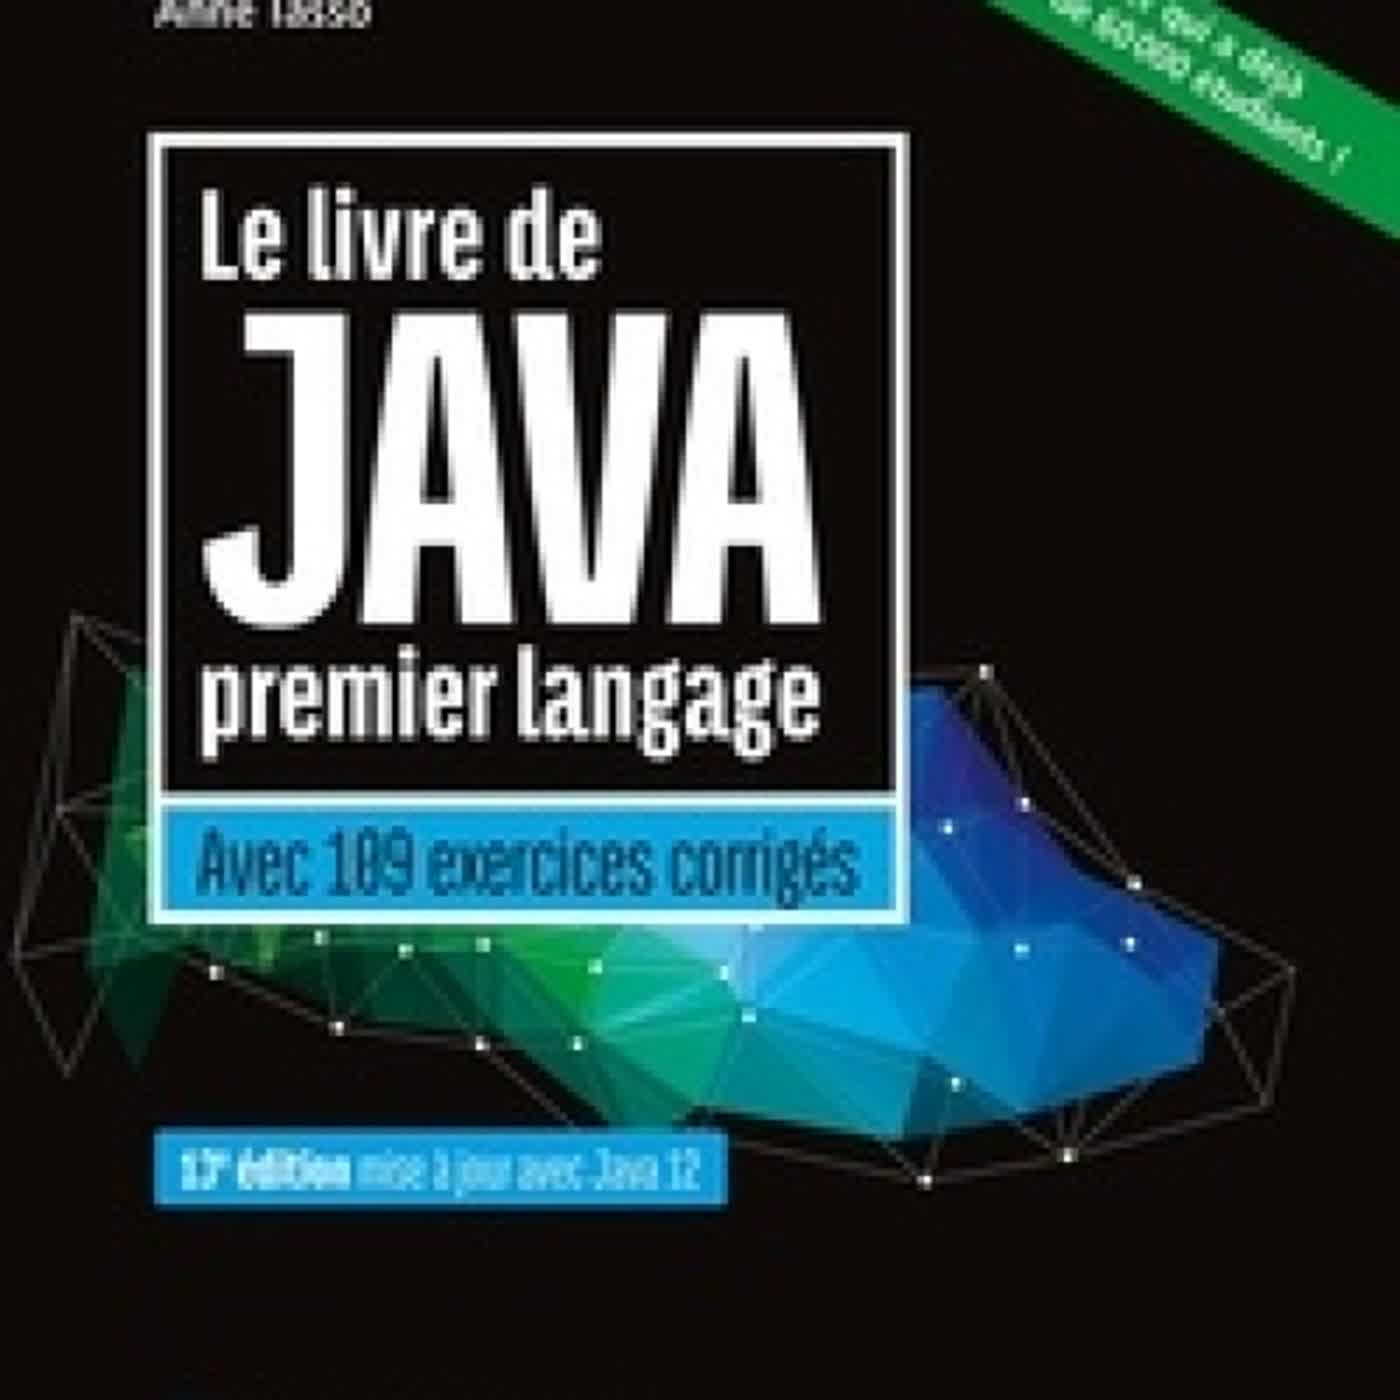 [Pdf/ePub] Le livre de Java premier langage  - Avec 109 exercices corrigés by Anne Tasso download ebook